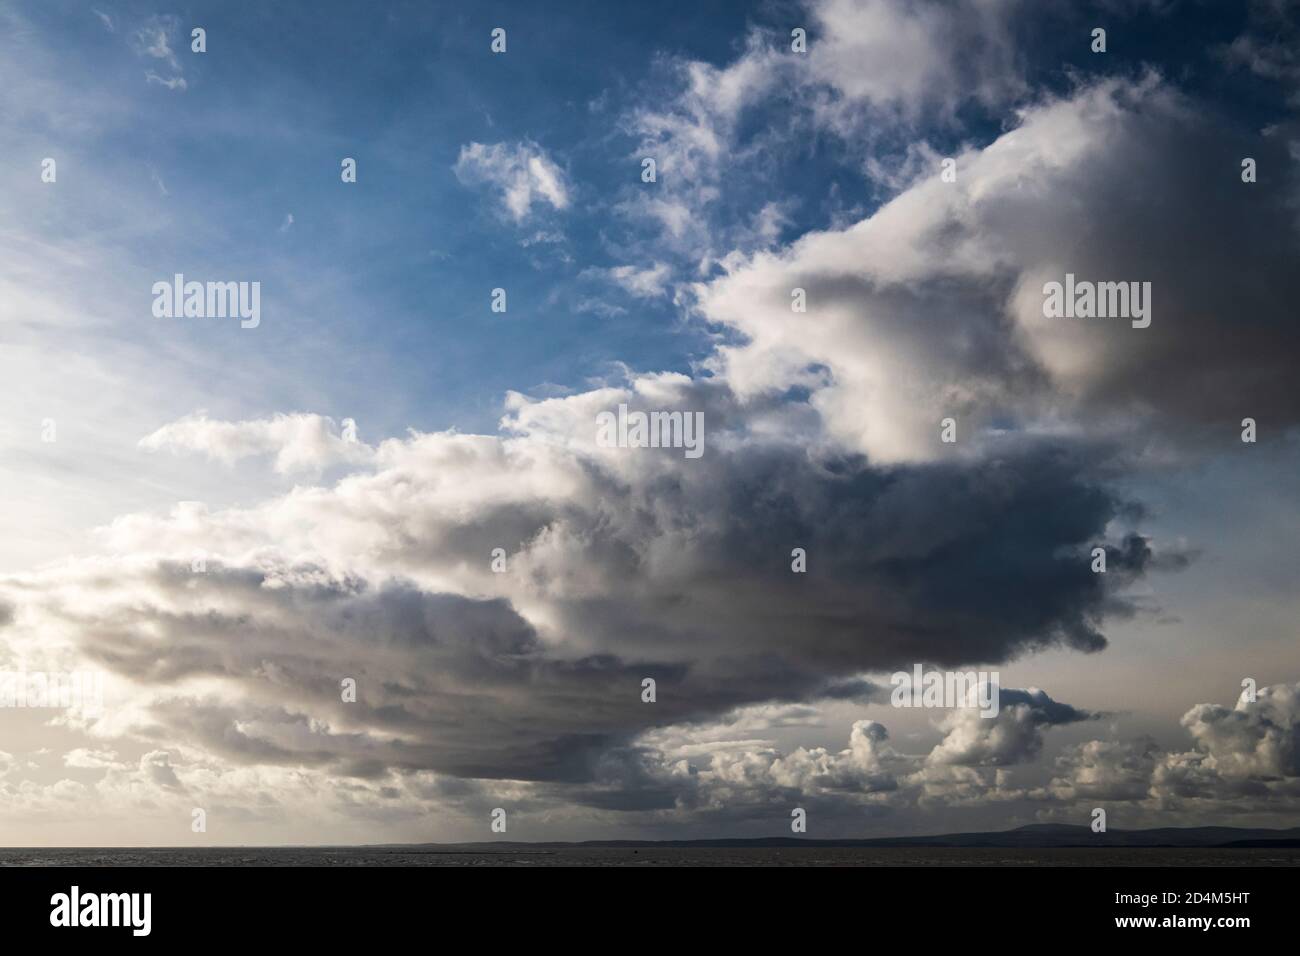 Un'immagine autunnale di un fronte meteo sulla baia di Morecambe, che si estende da Bolton le Sands a Walney Island, Lancashire, Inghilterra. 07 ottobre 2020 Foto Stock